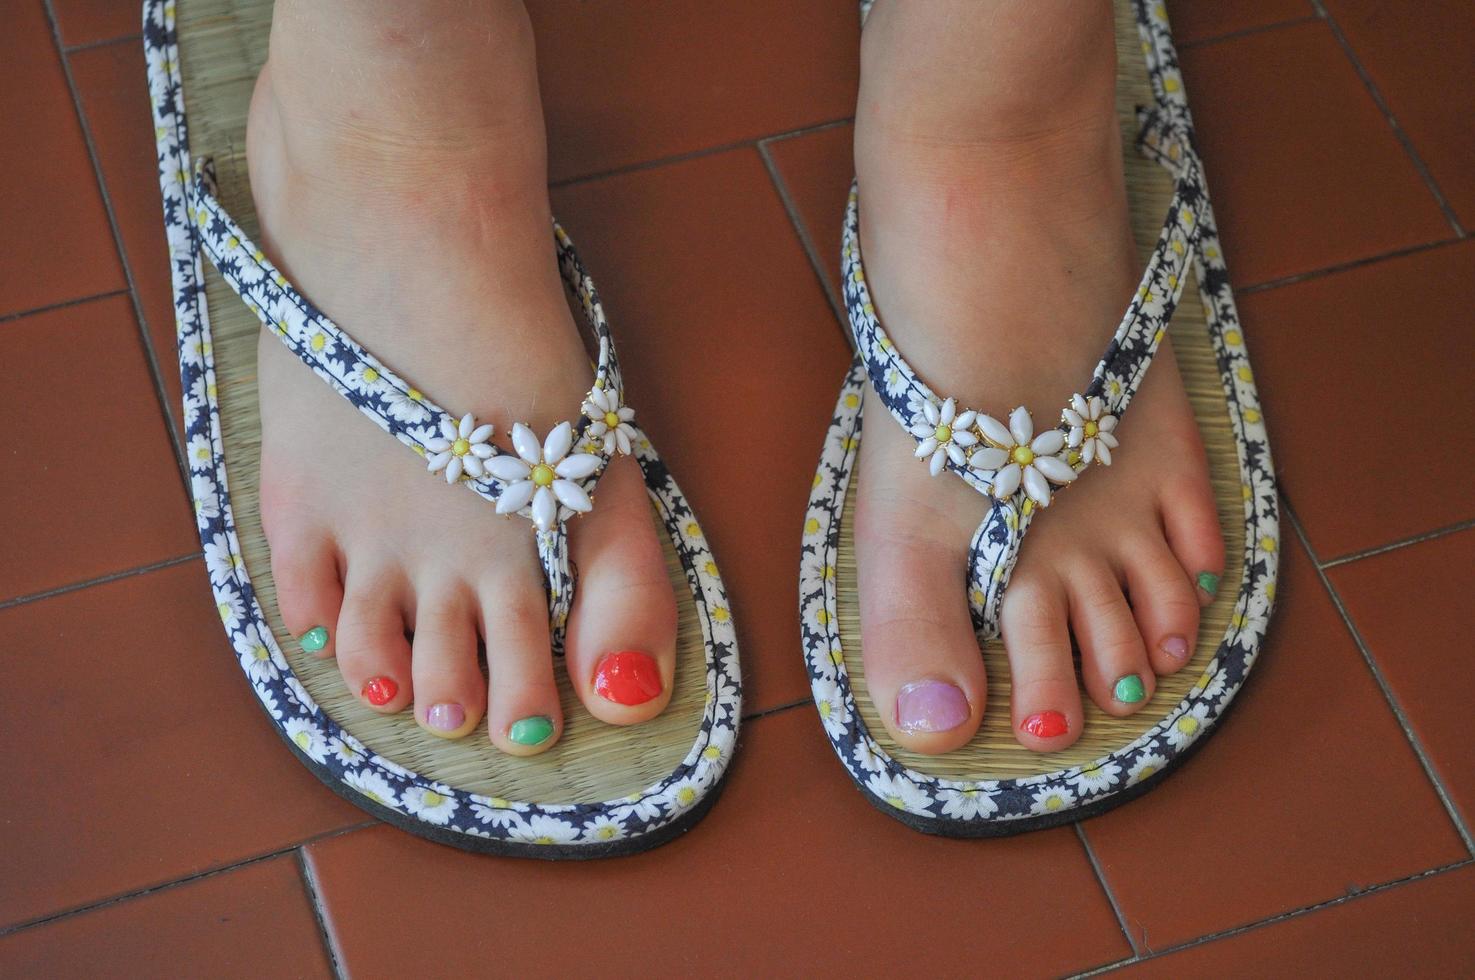 pieds de fille avec des sandales sur un trottoir photo